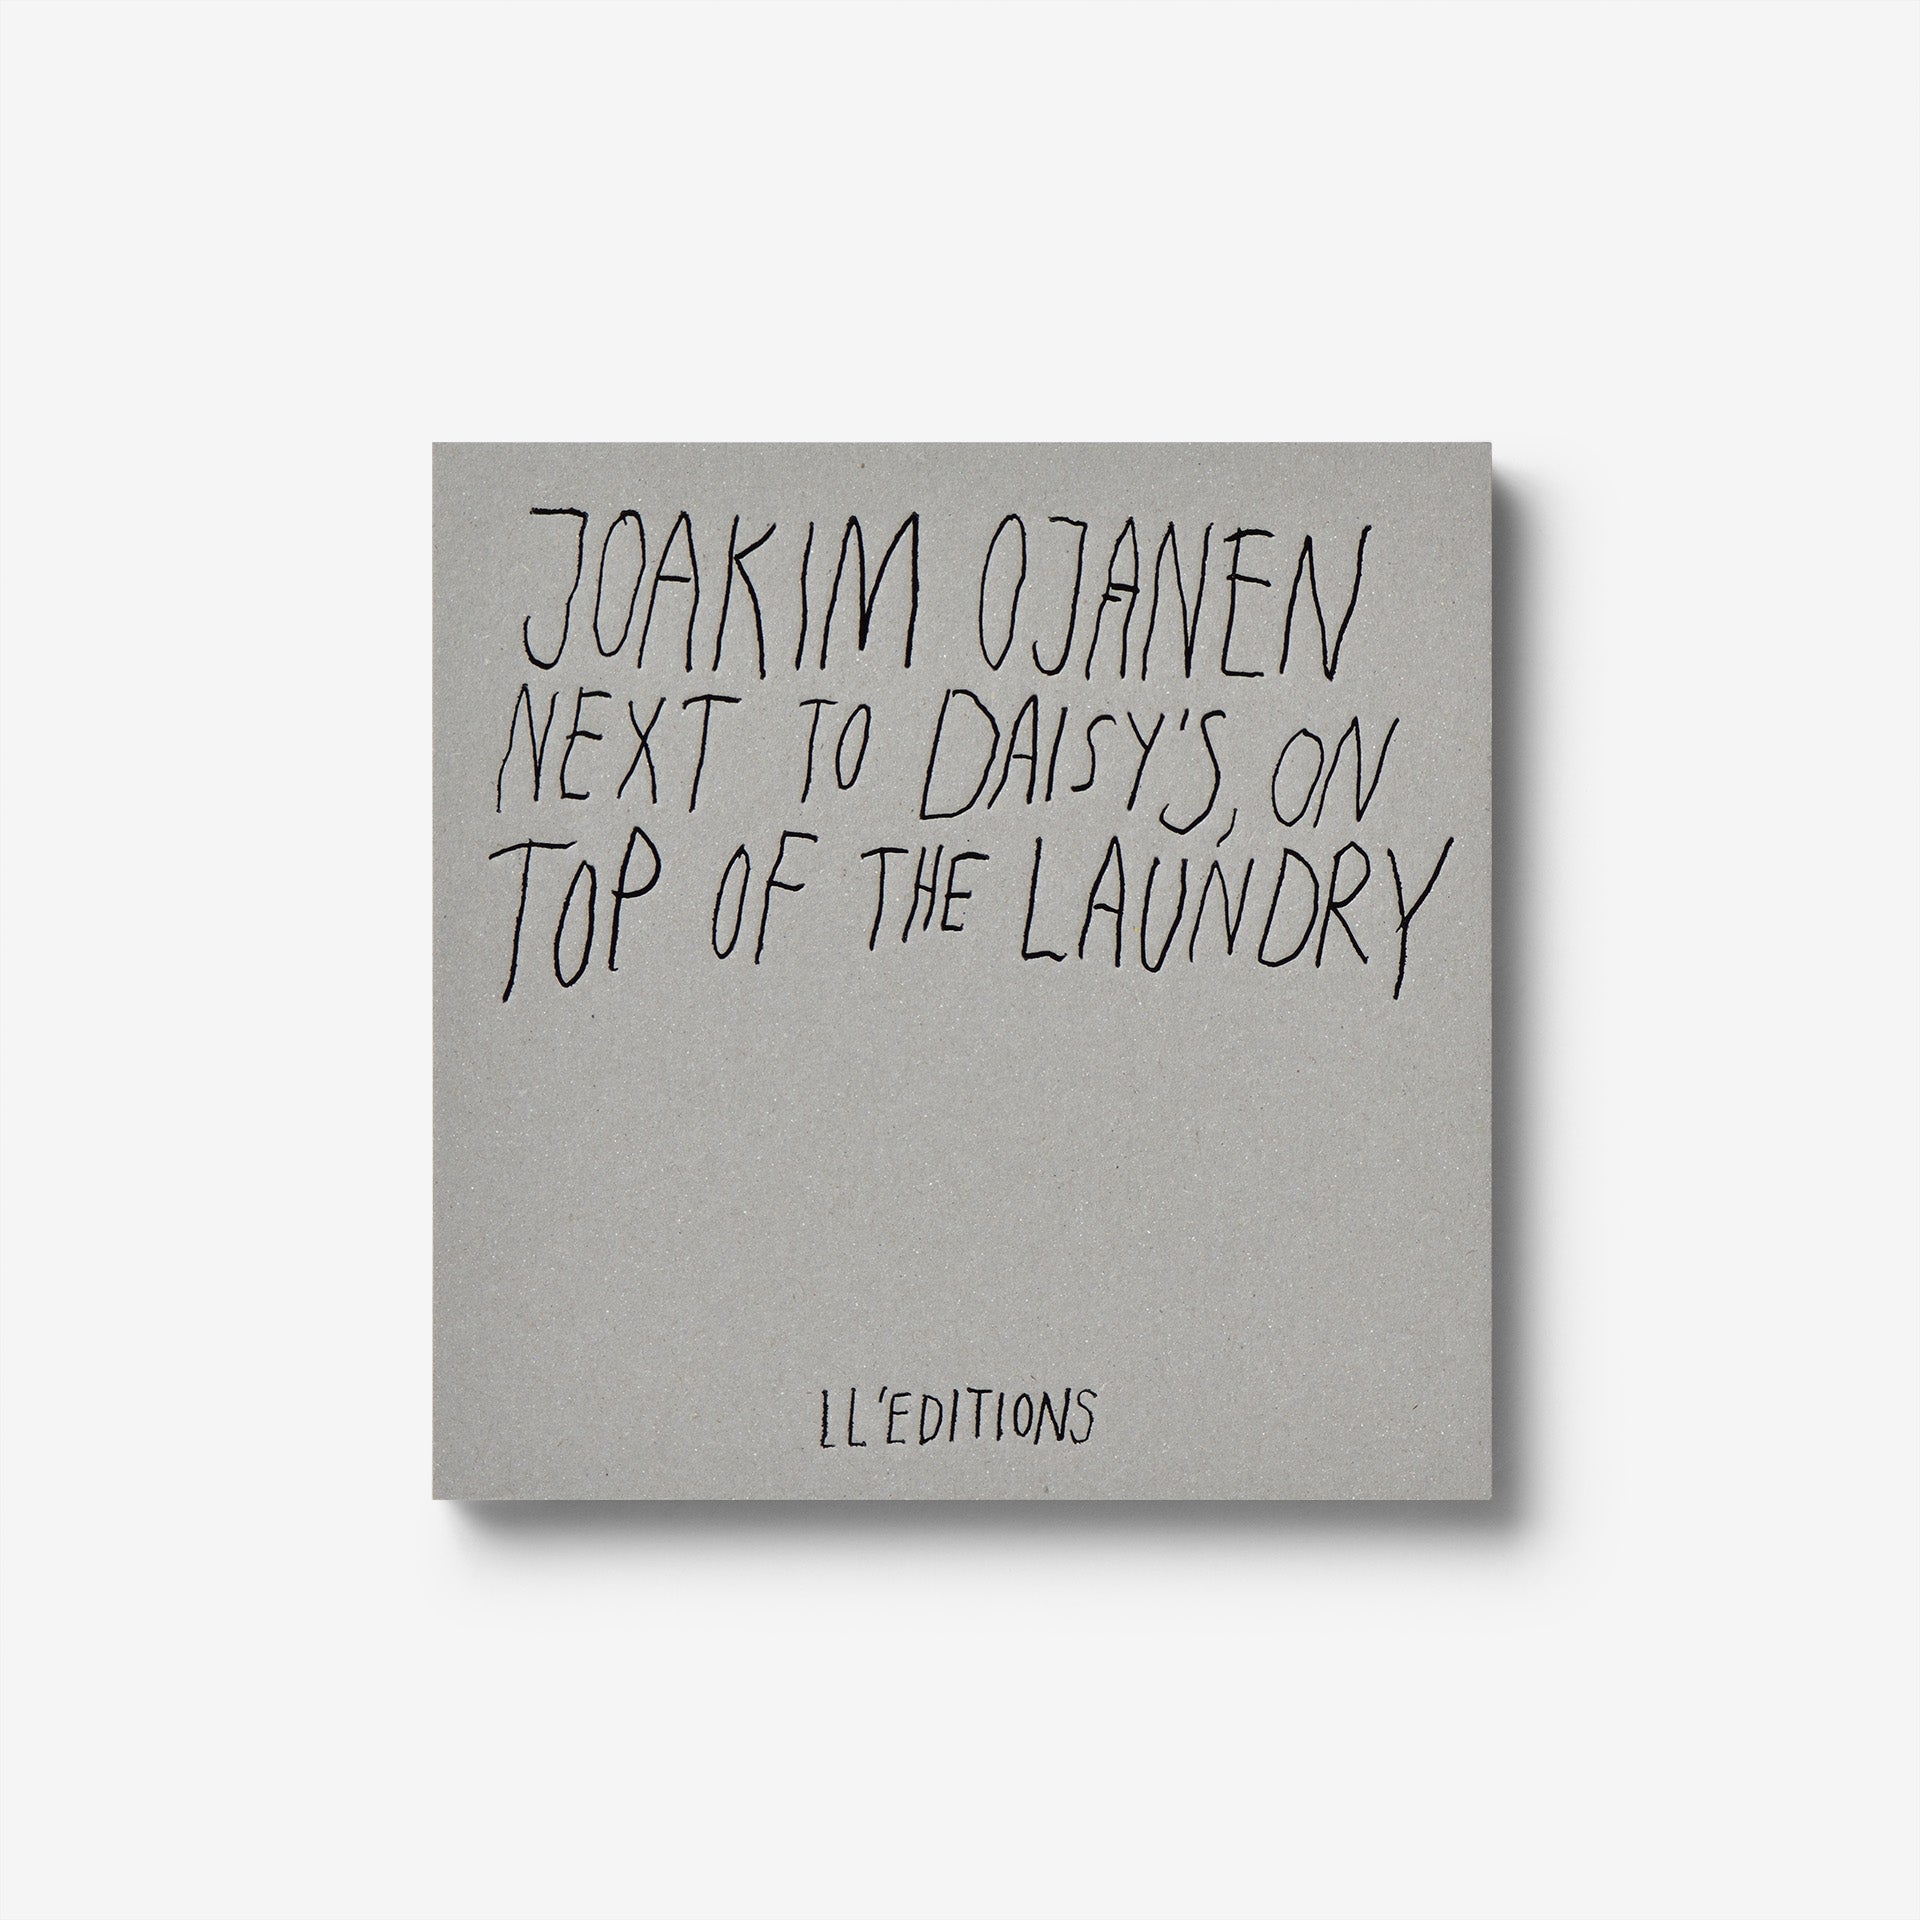 Joakim Ojanen: Next to Daisy’s, on top of the laundry